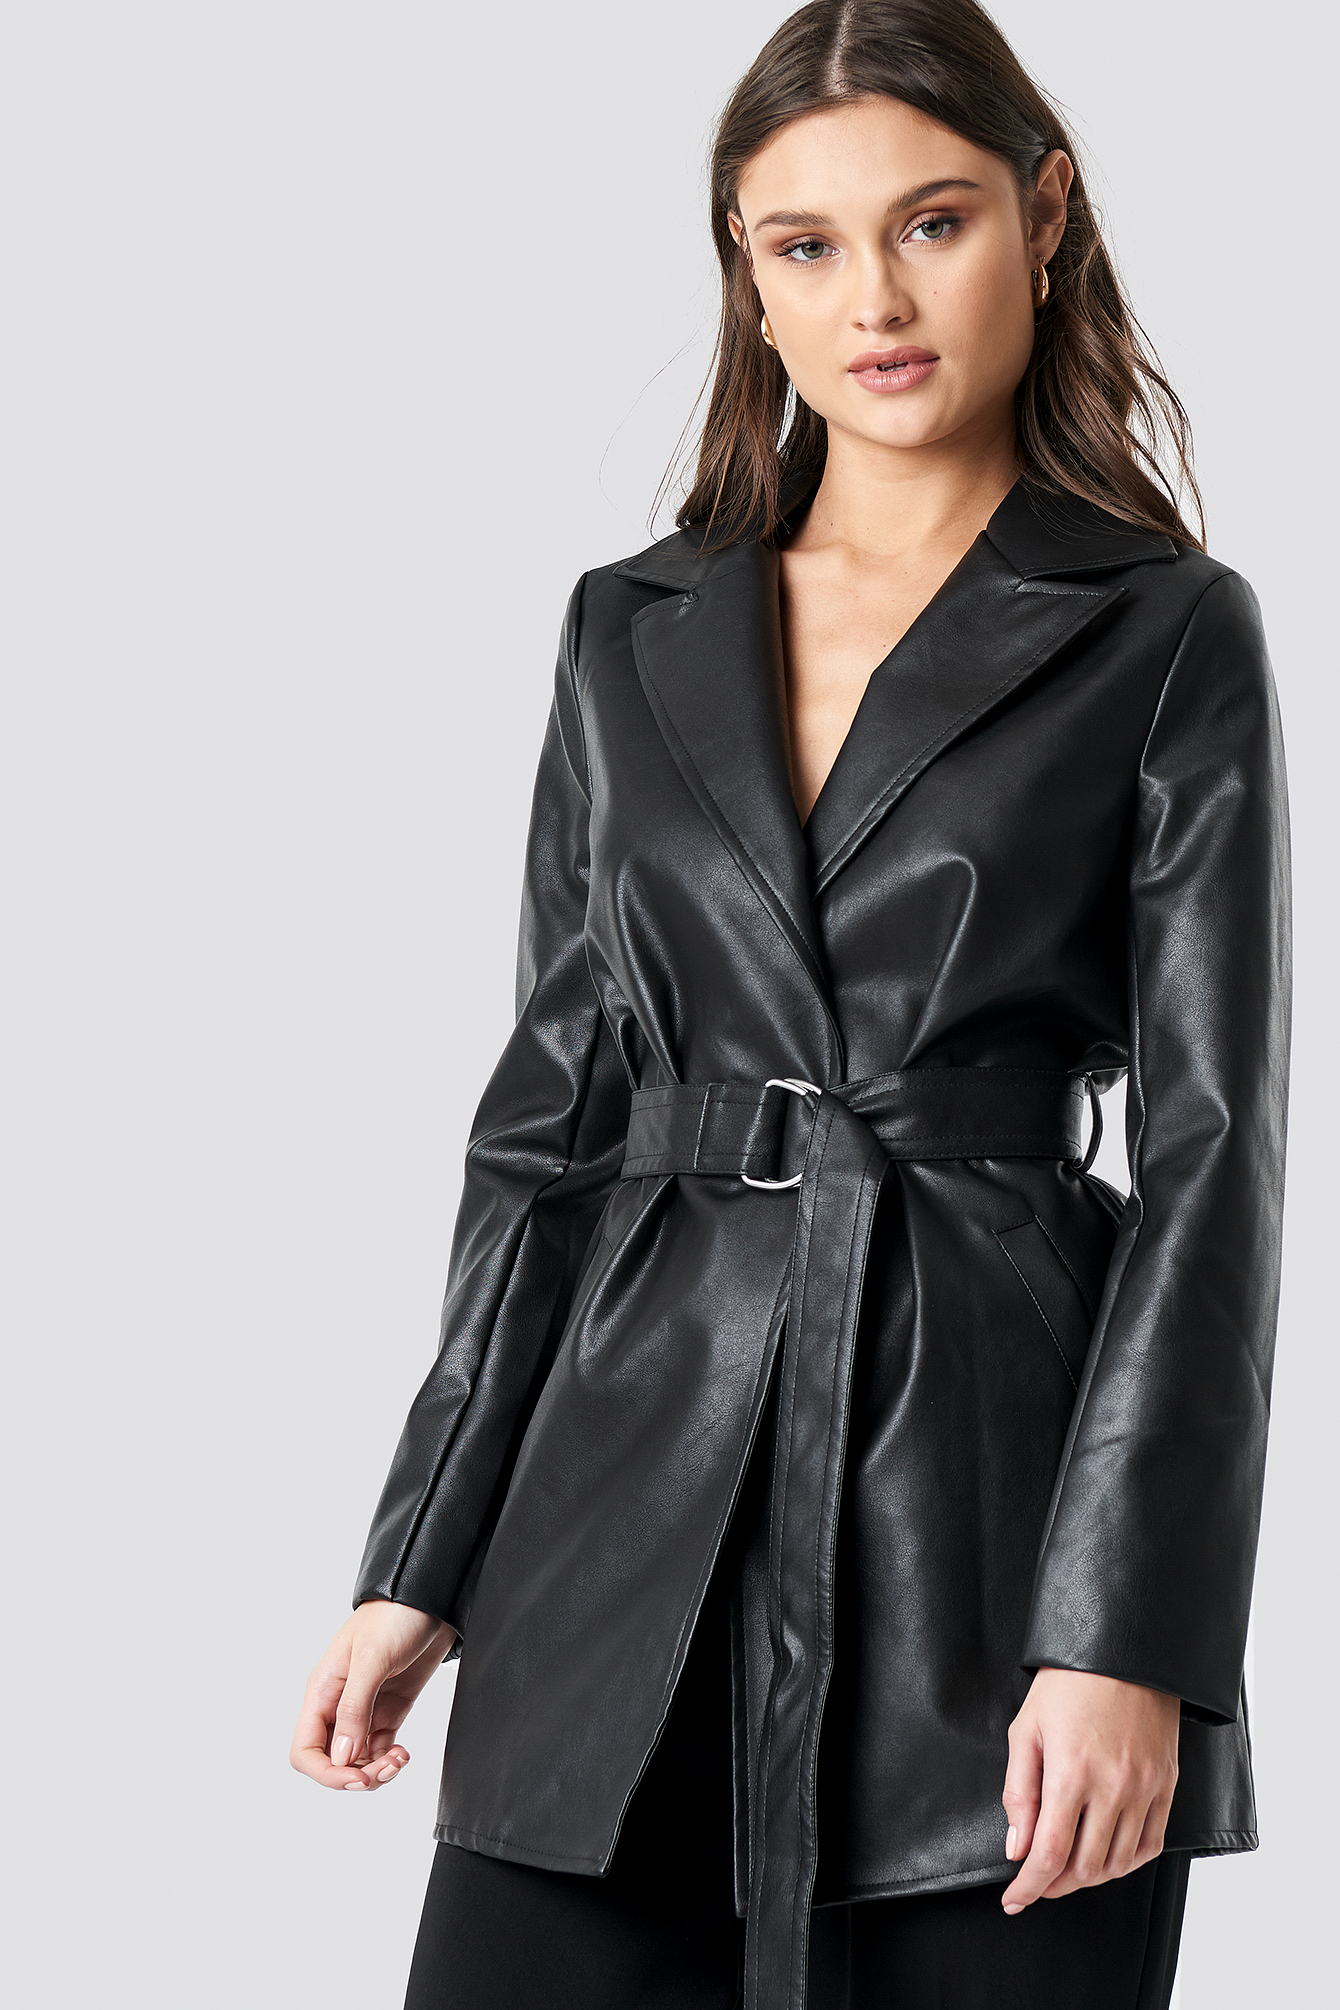 Leather jacket tilbud og priser - Prisjakt.no